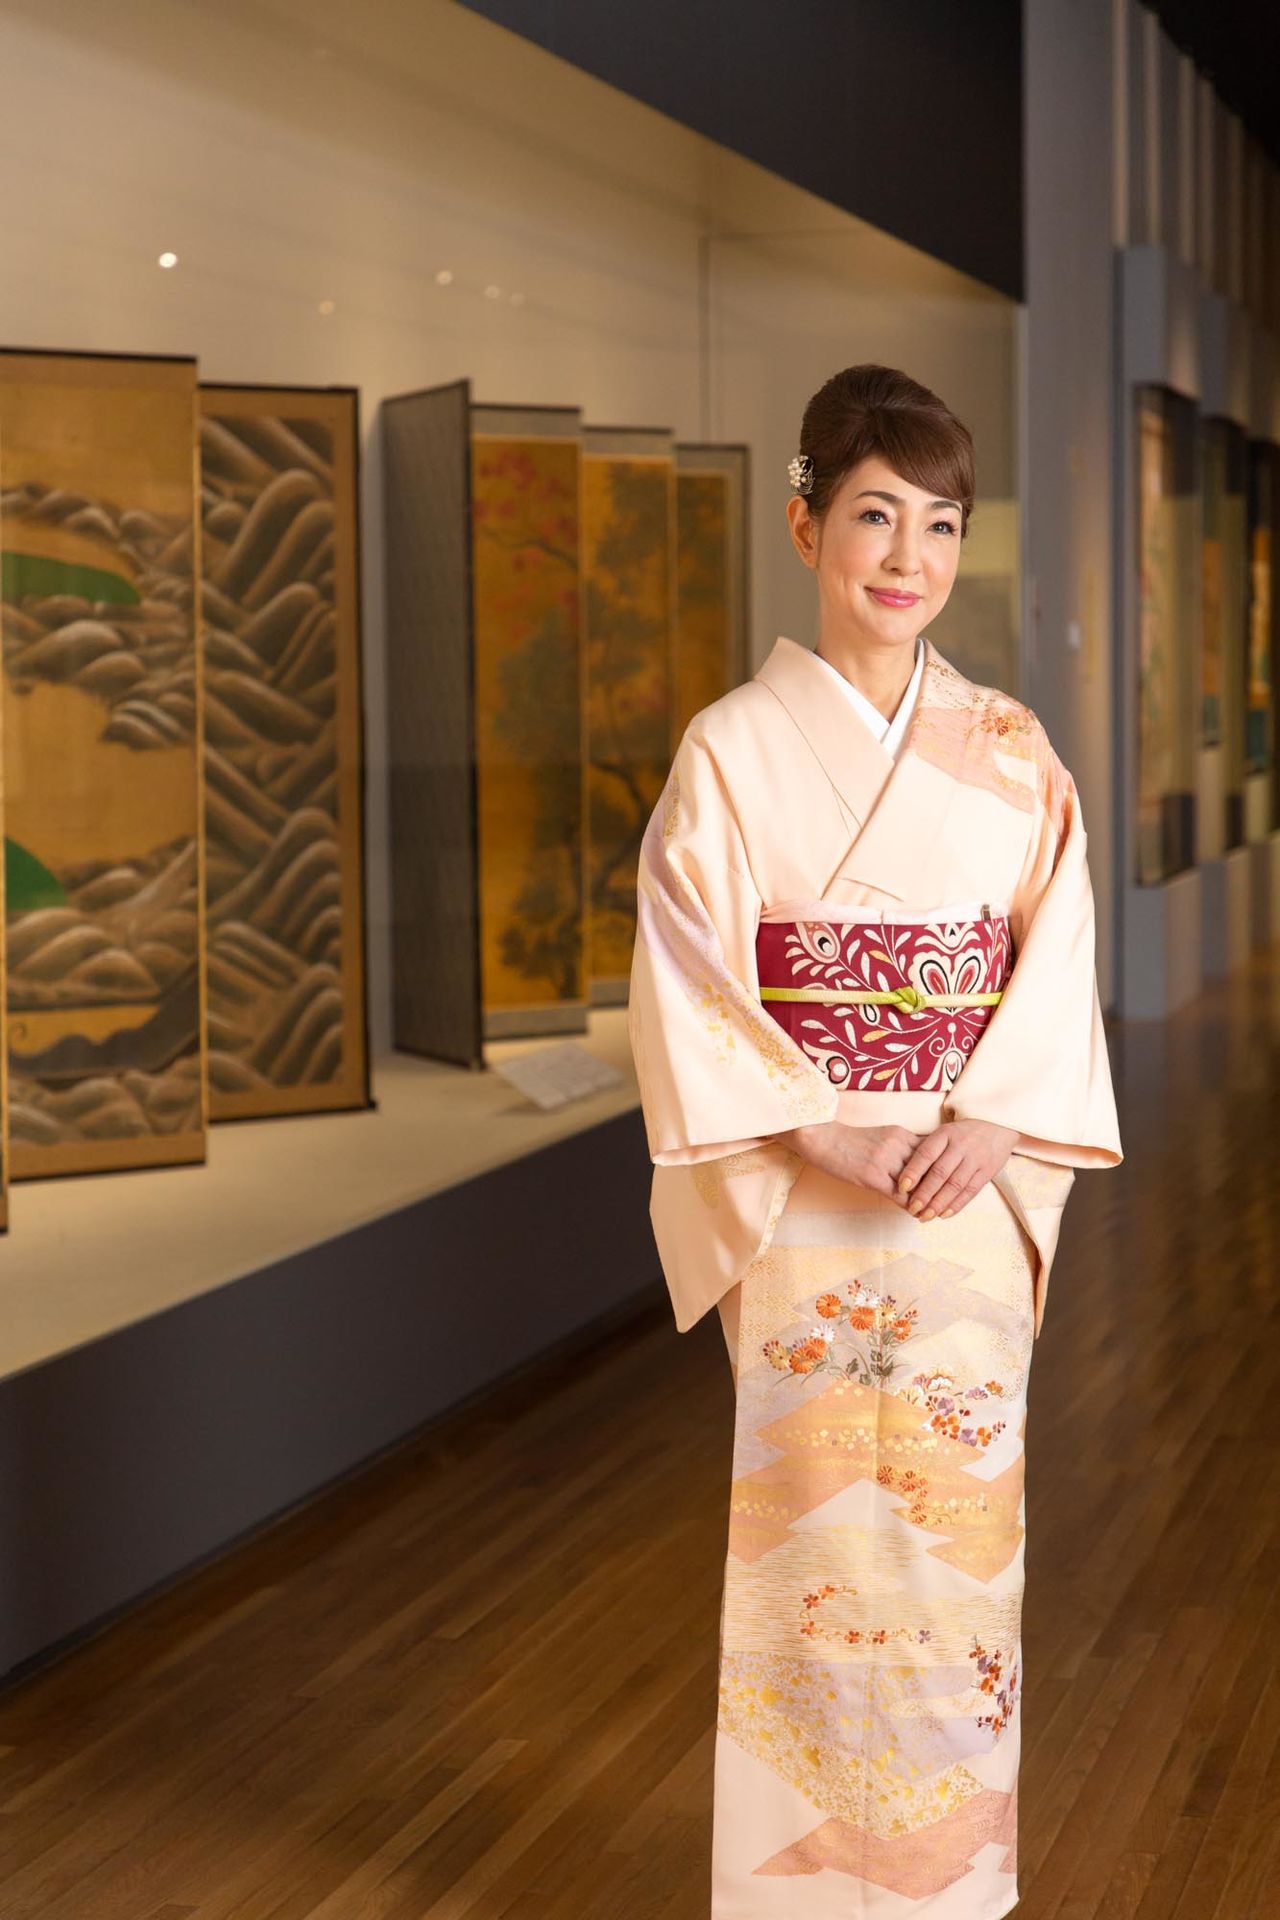 Yamazaki Taeko porte souvent un kimono dans les endroits publics.